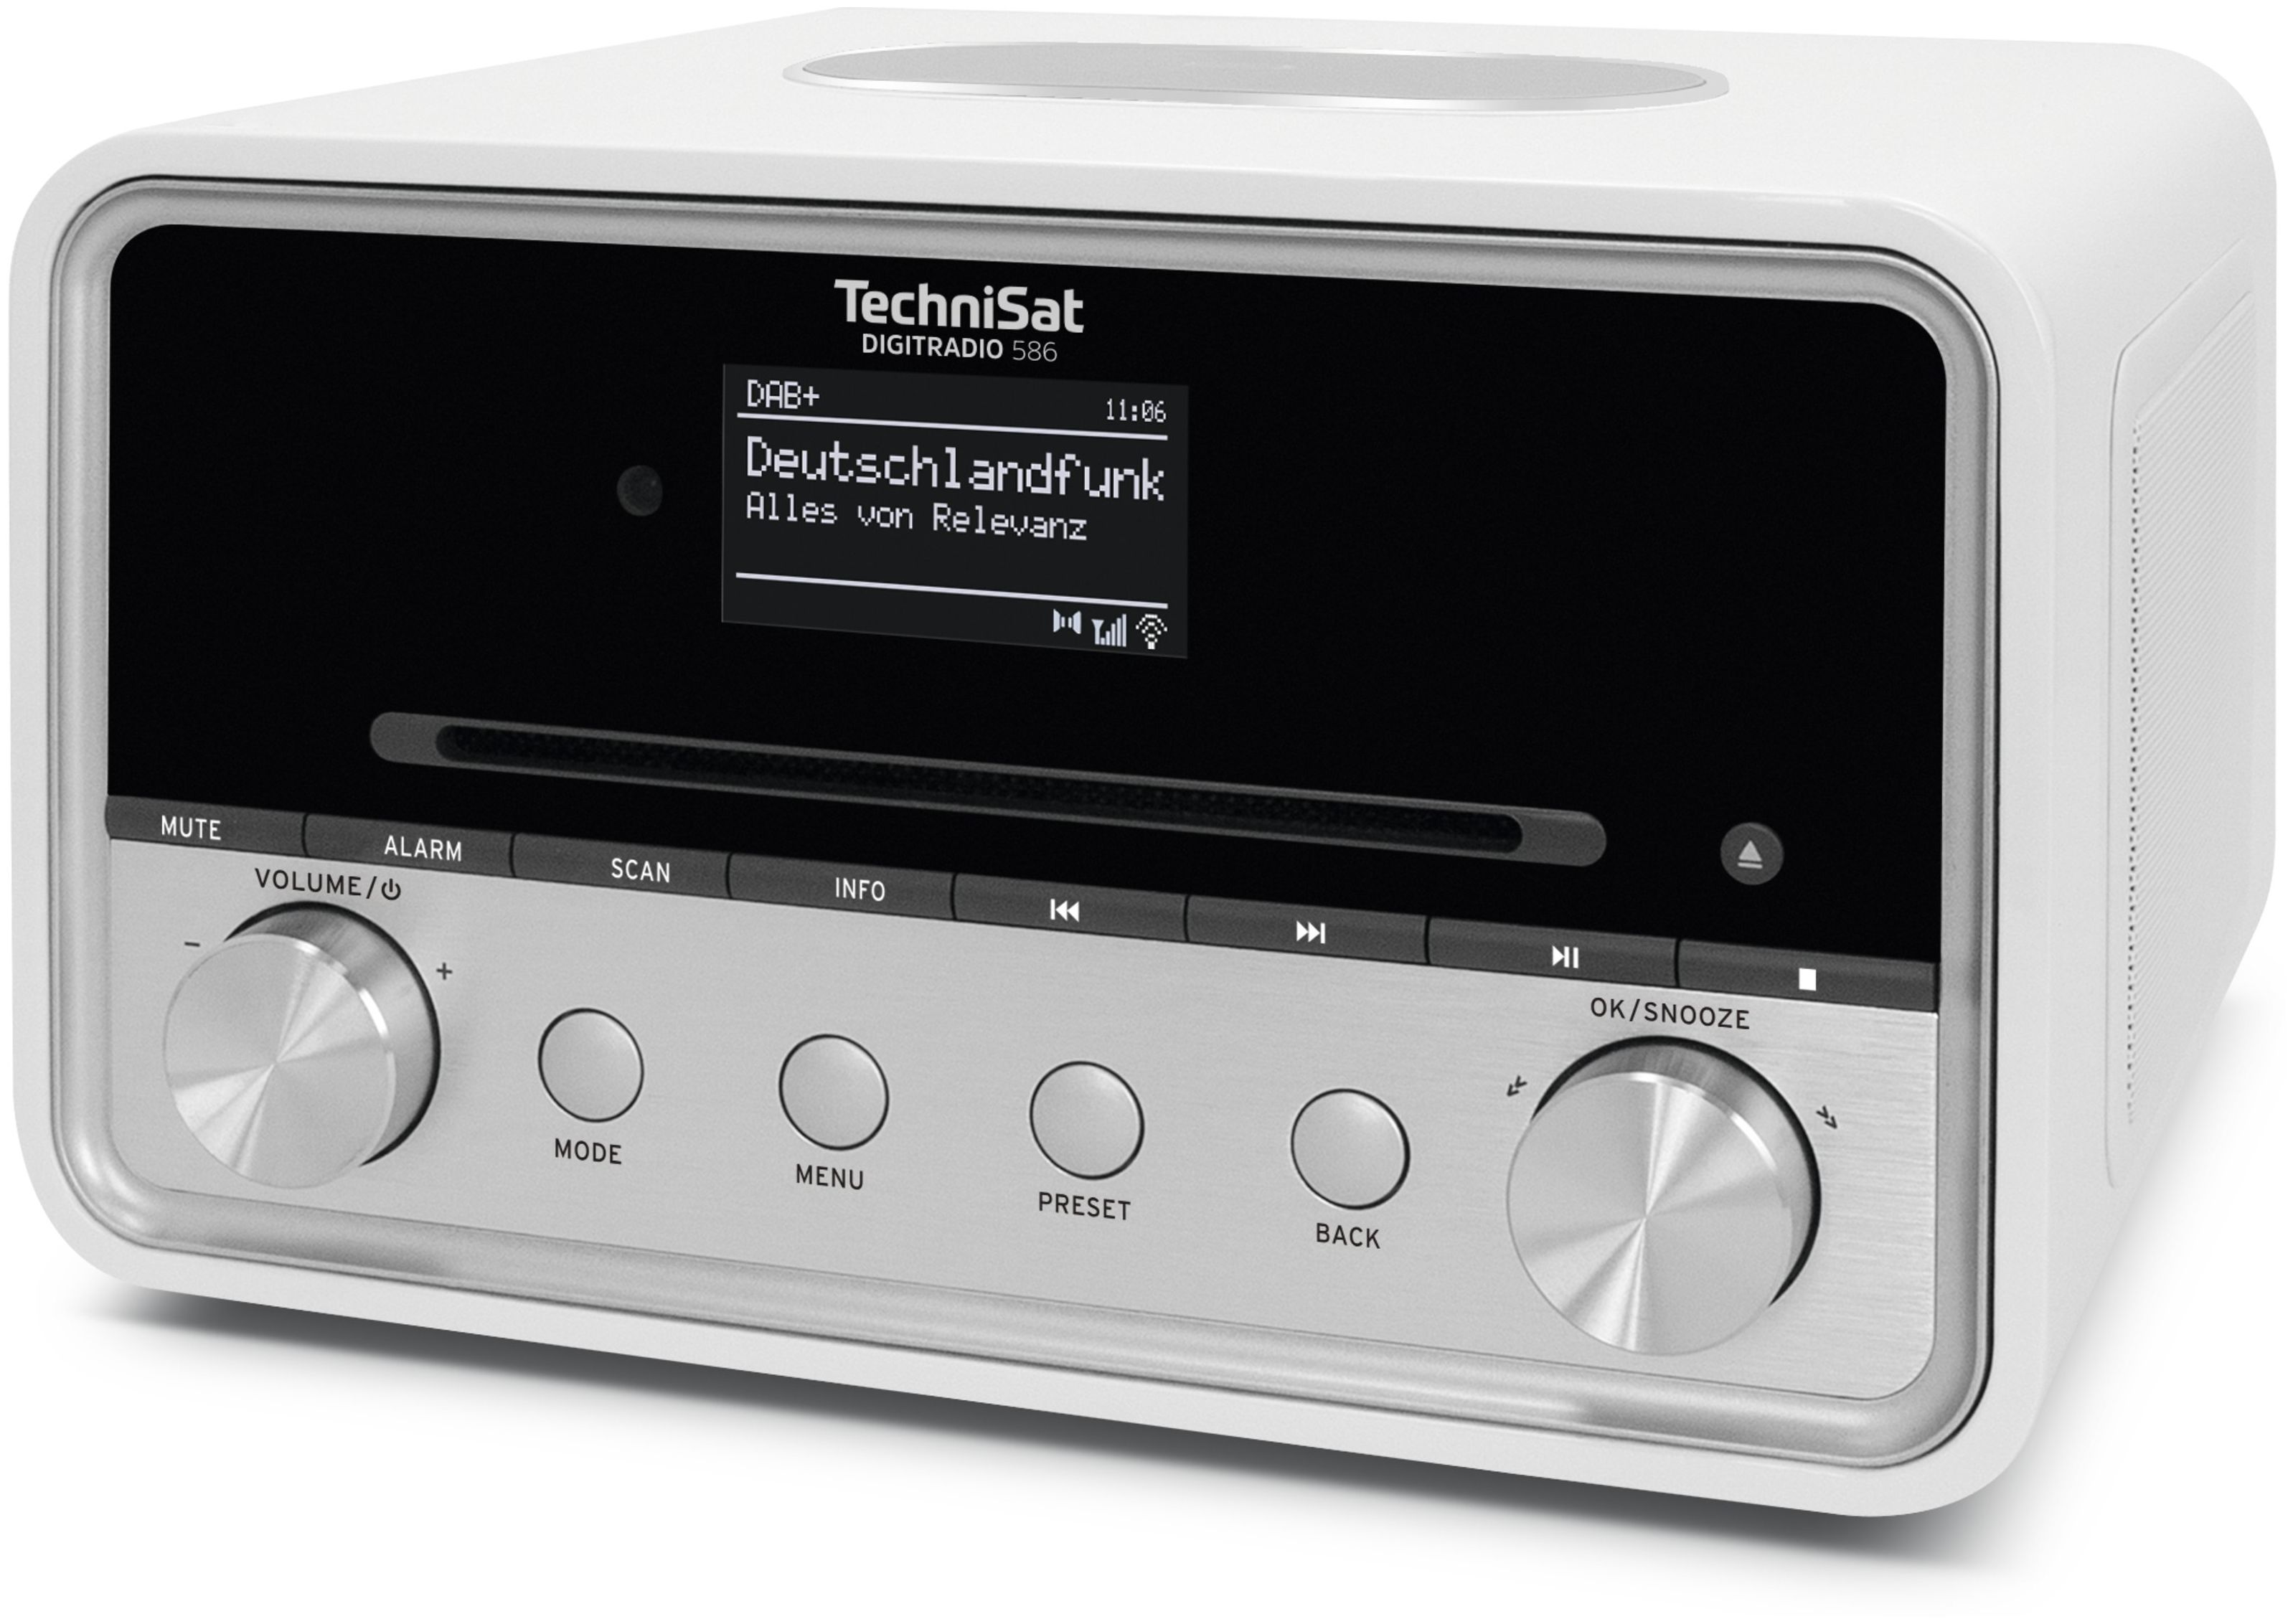 FM TechniSat Persönlich 586 Radio Technomarkt von DAB+, Digitradio expert Bluetooth (Weiß)